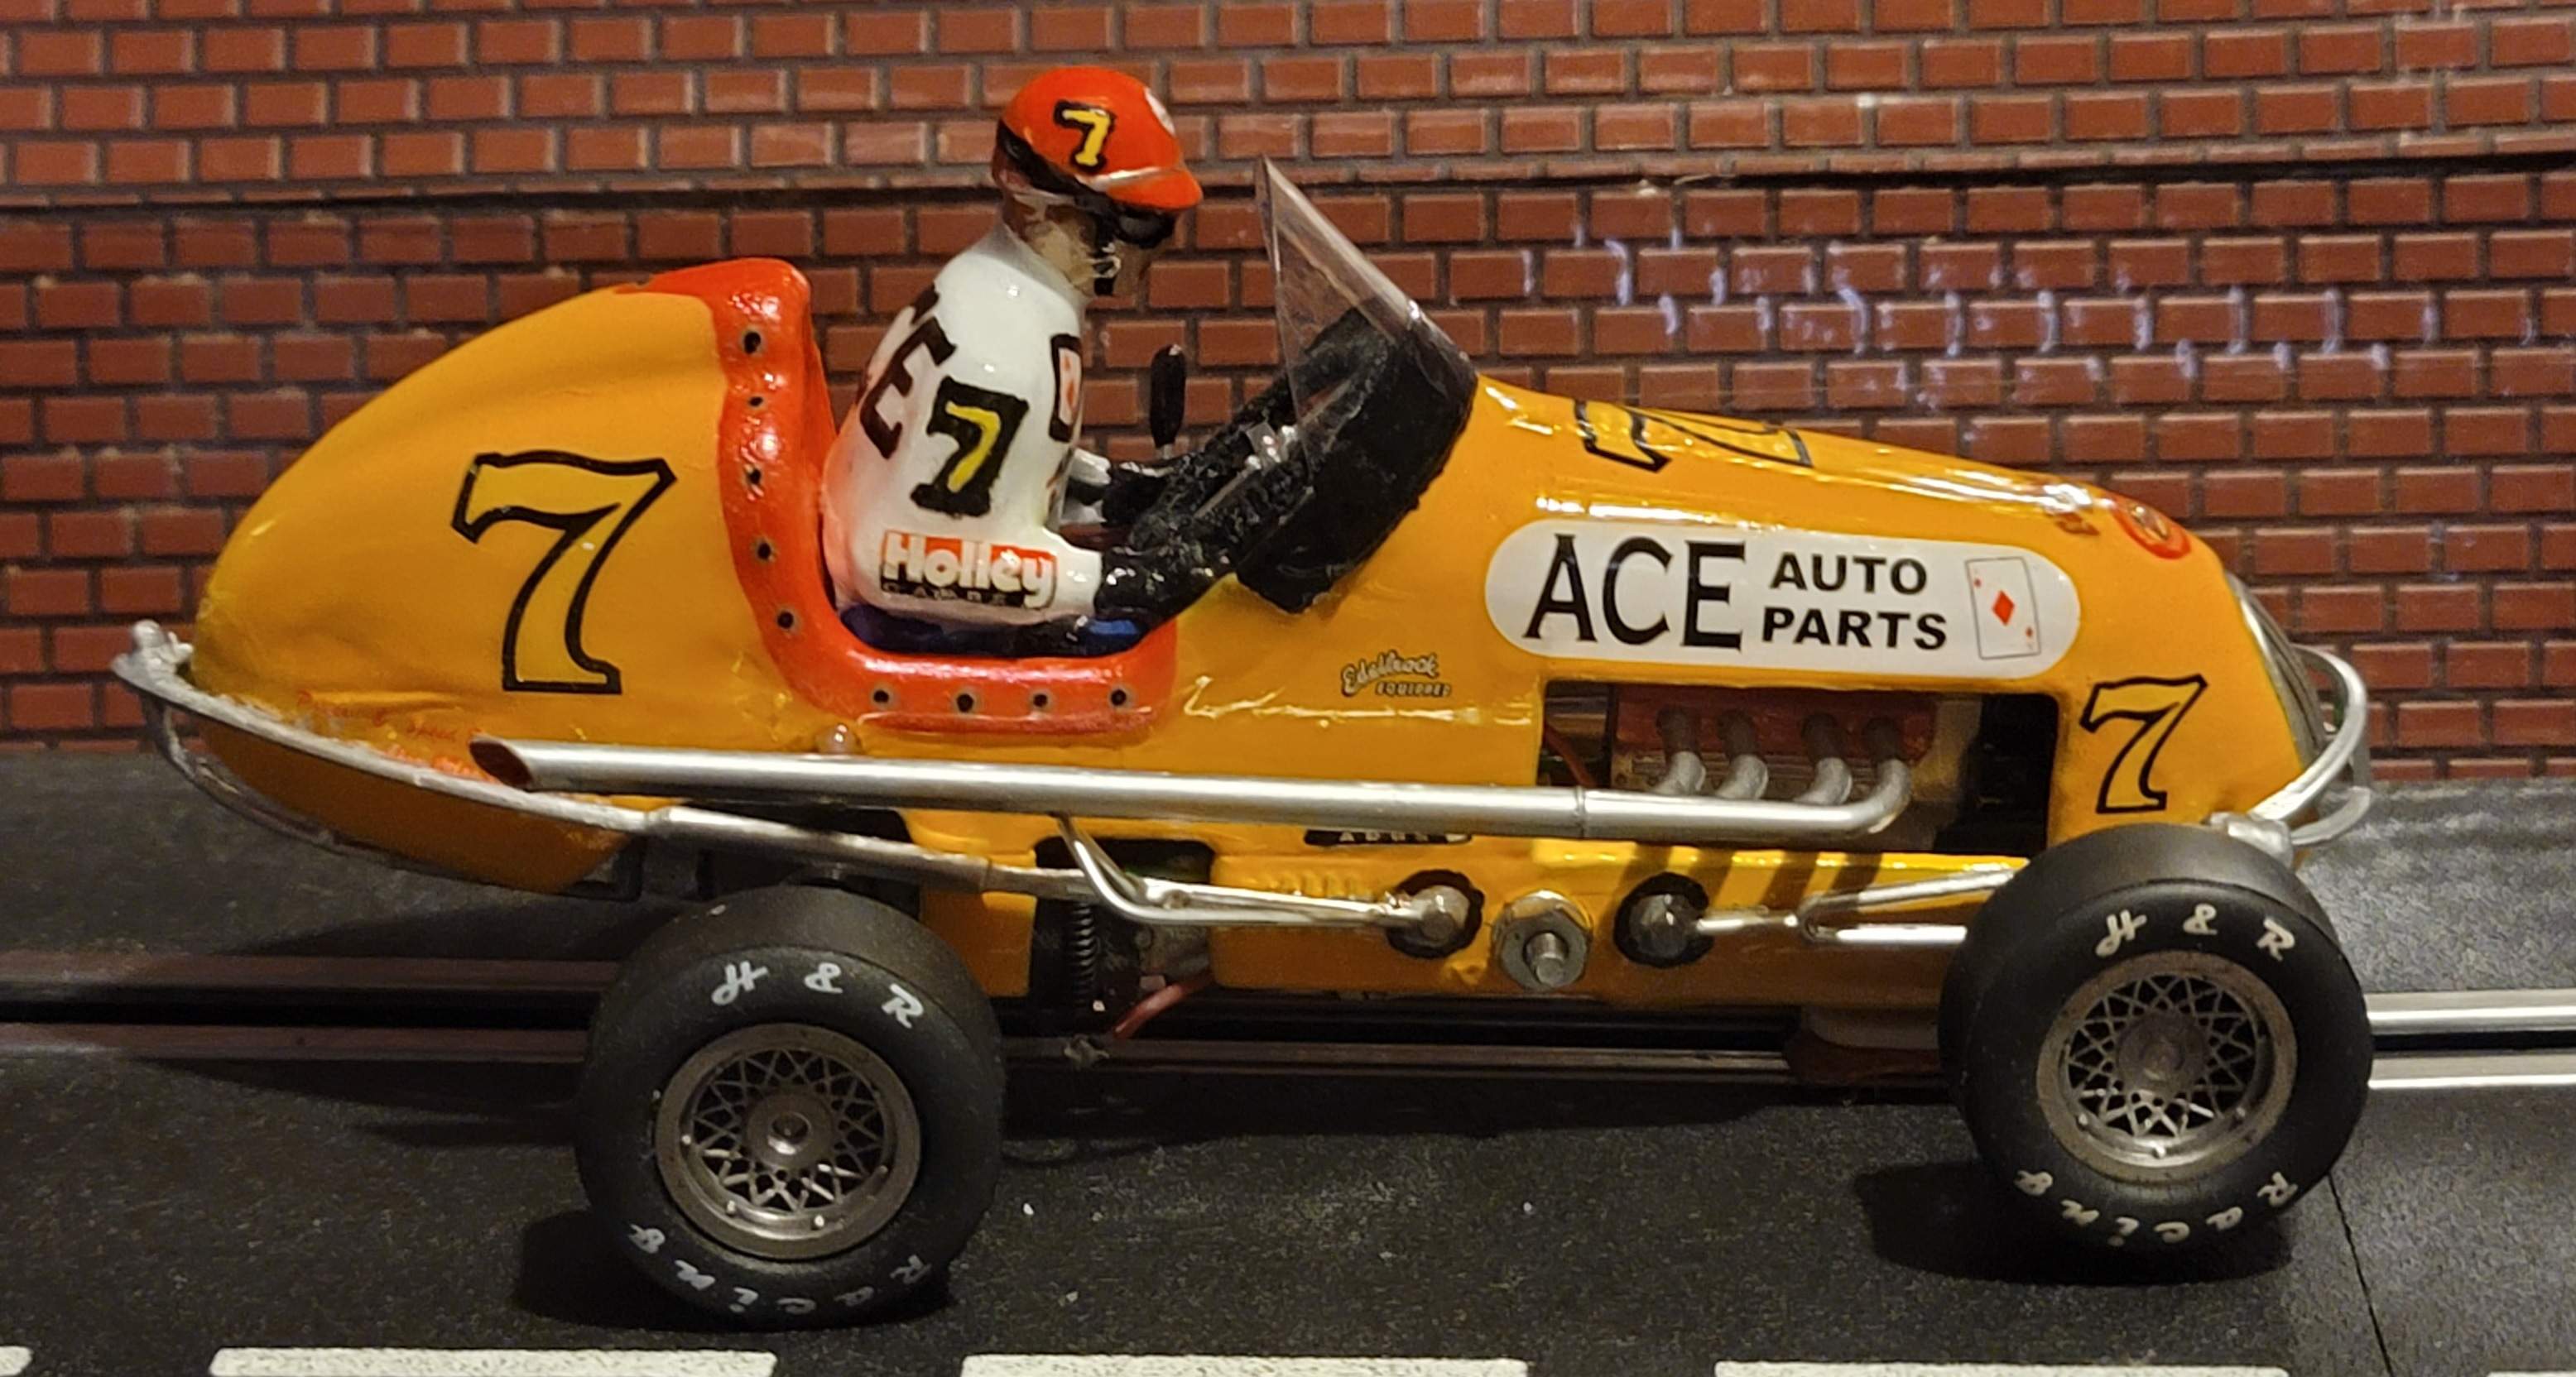 * SUPER SALE * Monogram Midget Racer “ACE Auto Parts” Racing Special 1/24 Scale Slot Car 7